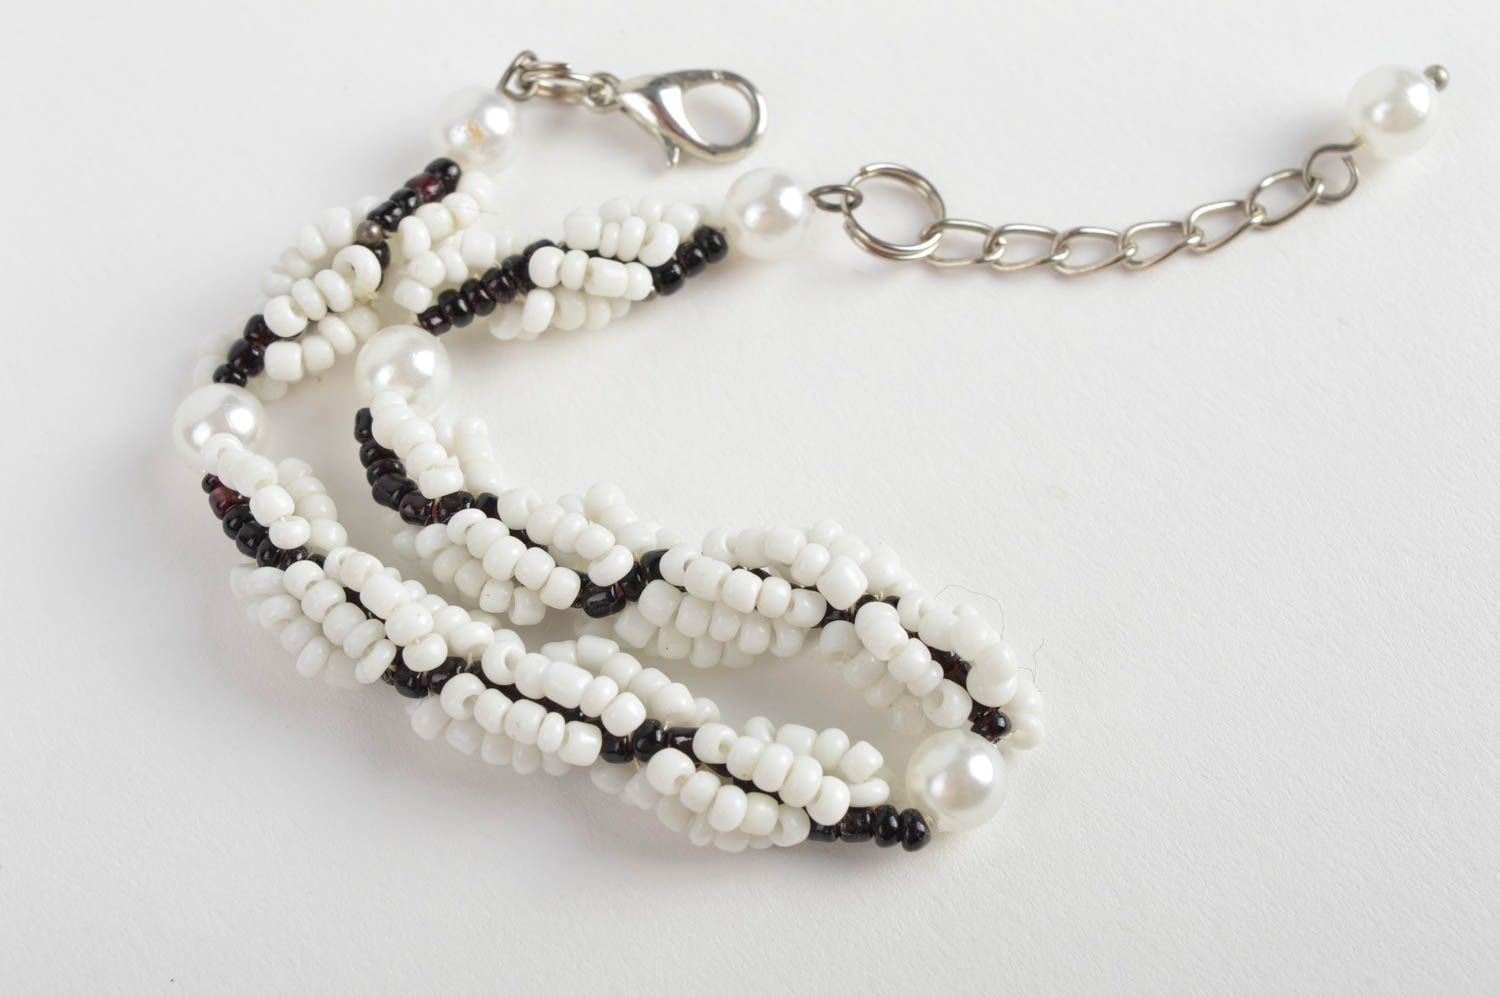 Handmade designer black and white bead woven wrist bracelet for women photo 4